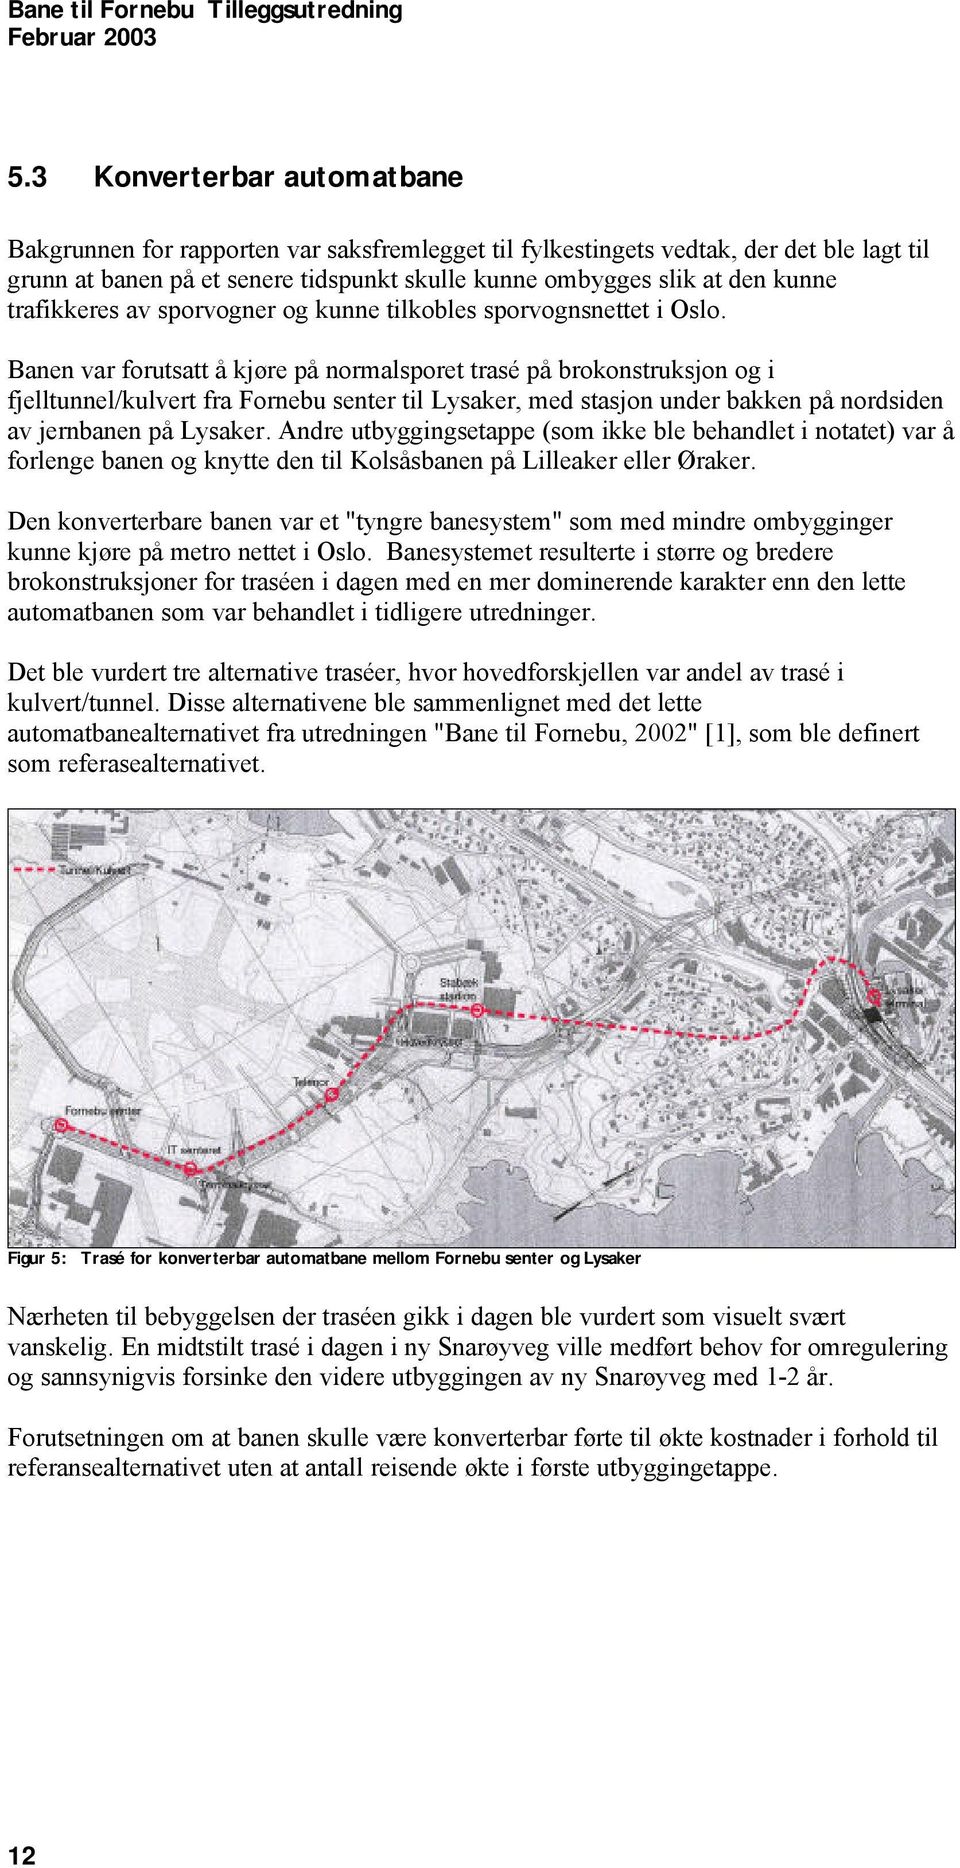 Banen var forutsatt å kjøre på normalsporet trasé på brokonstruksjon og i fjelltunnel/kulvert fra Fornebu senter til Lysaker, med stasjon under bakken på nordsiden av jernbanen på Lysaker.